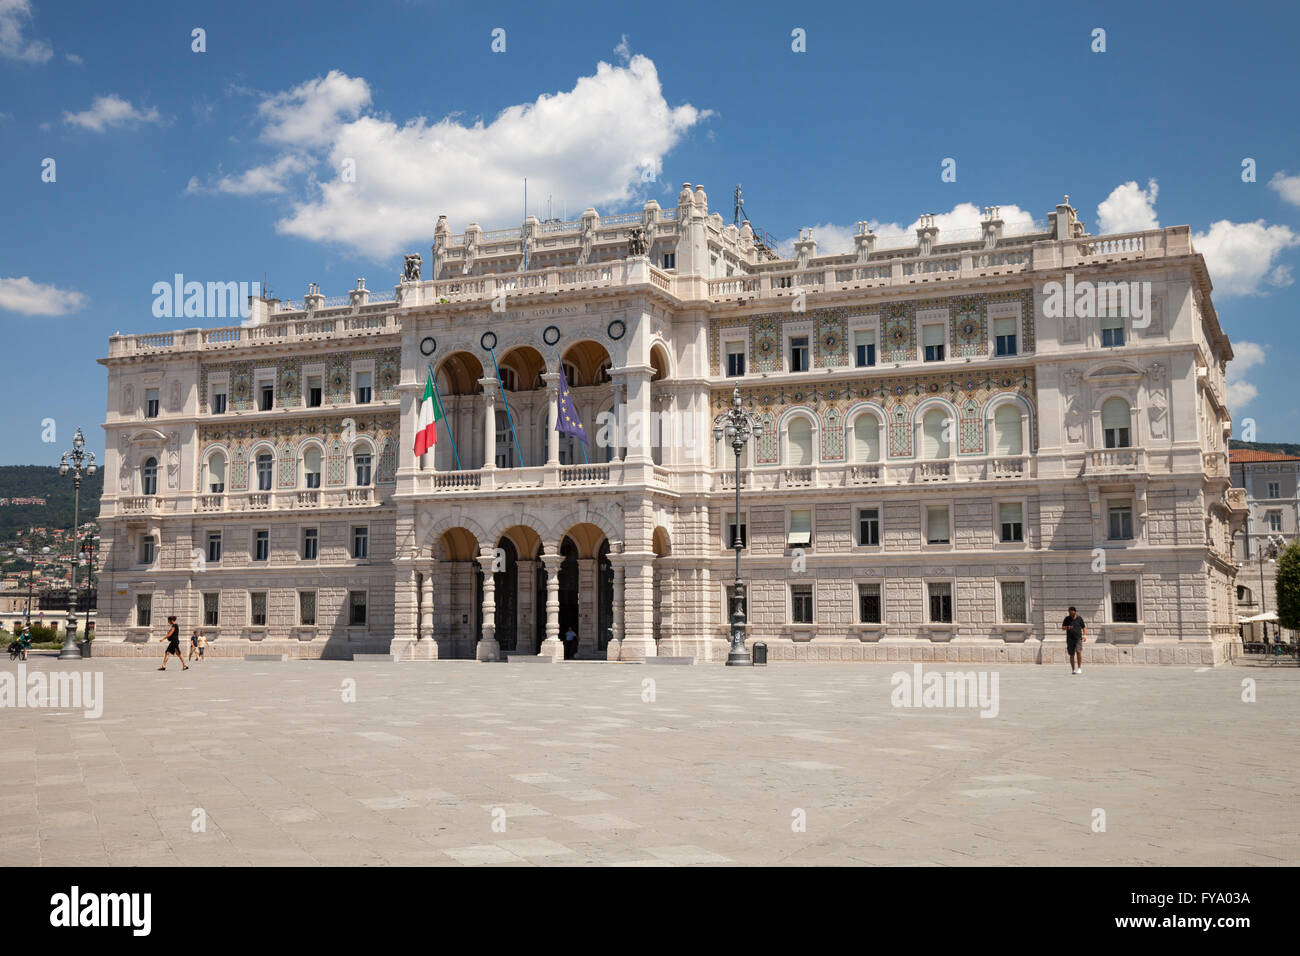 Palazzo del Governo, Piazza Unita d'Italia, Trieste, Friuli-Venezia Giulia, Italy Stock Photo